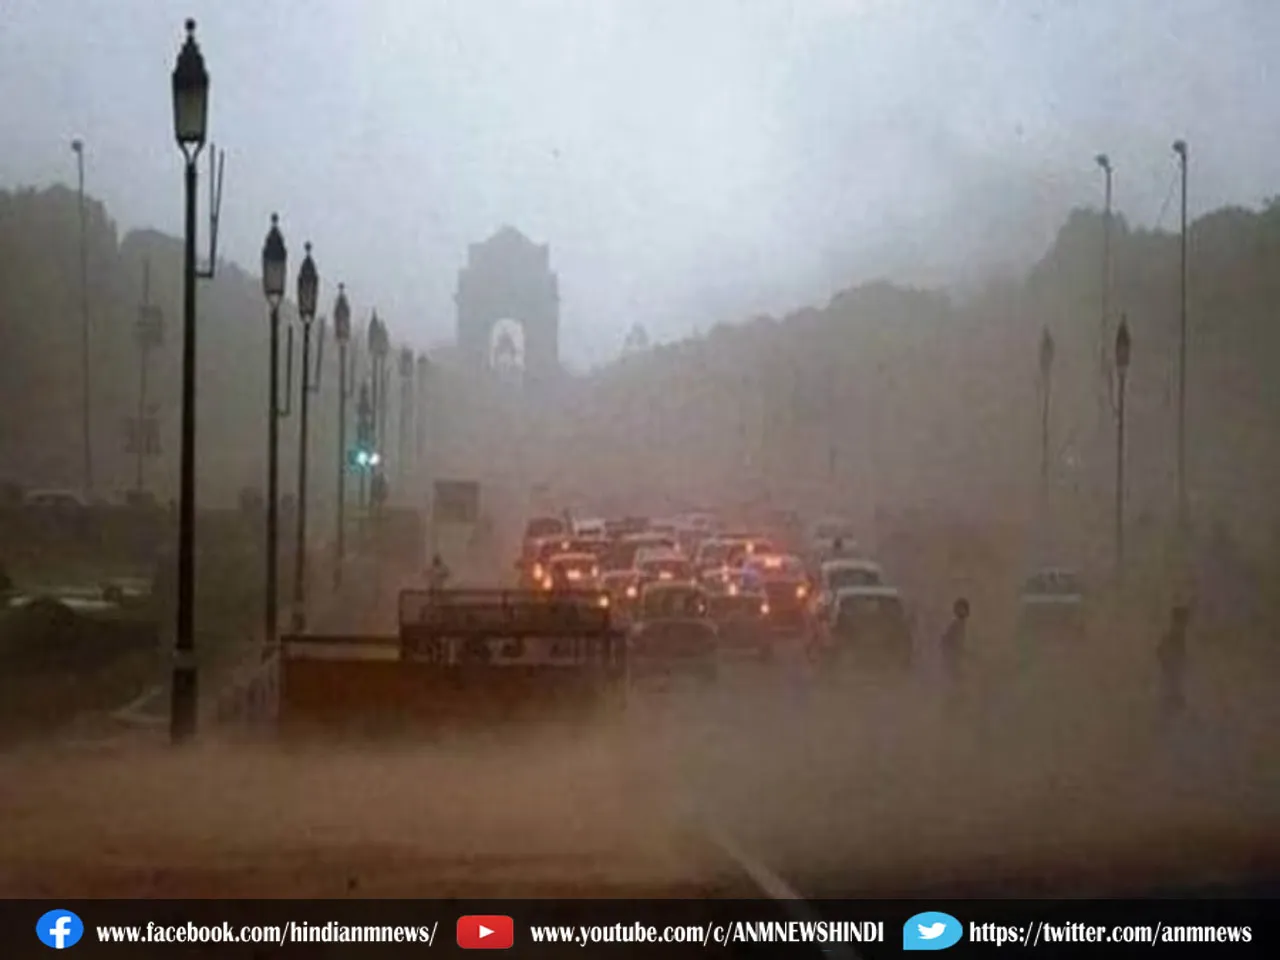 दिल्ली-एनसीआर में धूल भरी आंधी, आखिर क्यों?